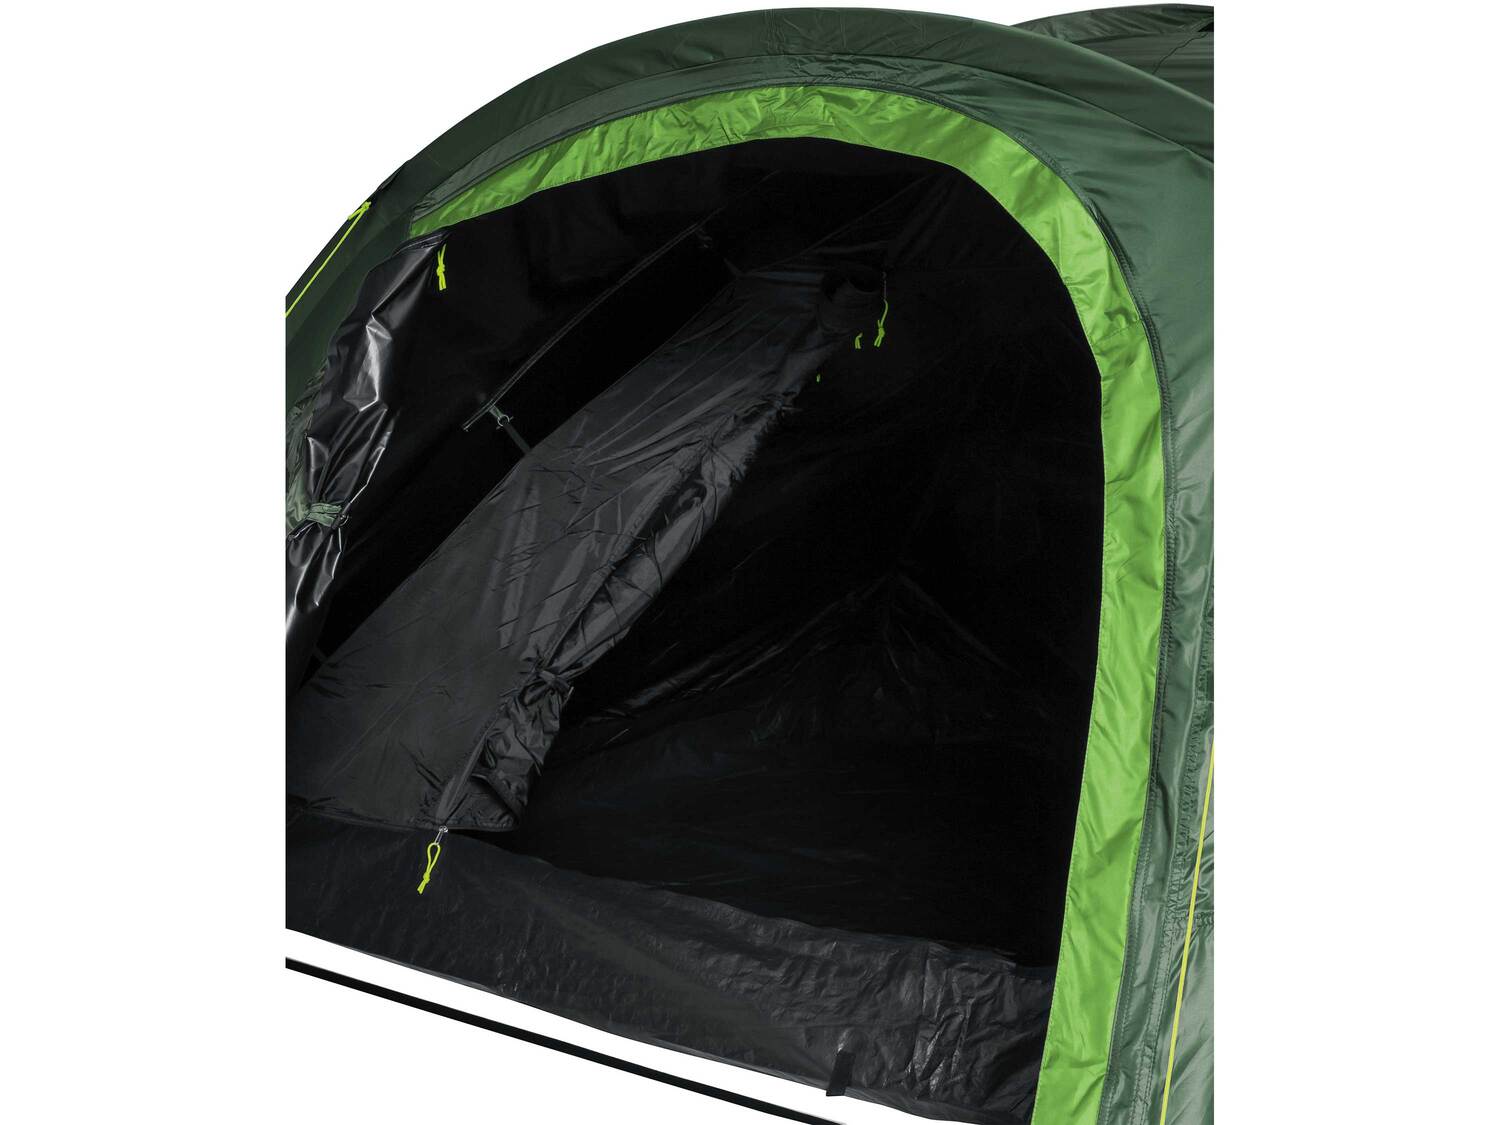 4-osobowy namiot iglo z podwójnym dachem i zaciemnieniem Crivit, cena 249,00 PLN ...